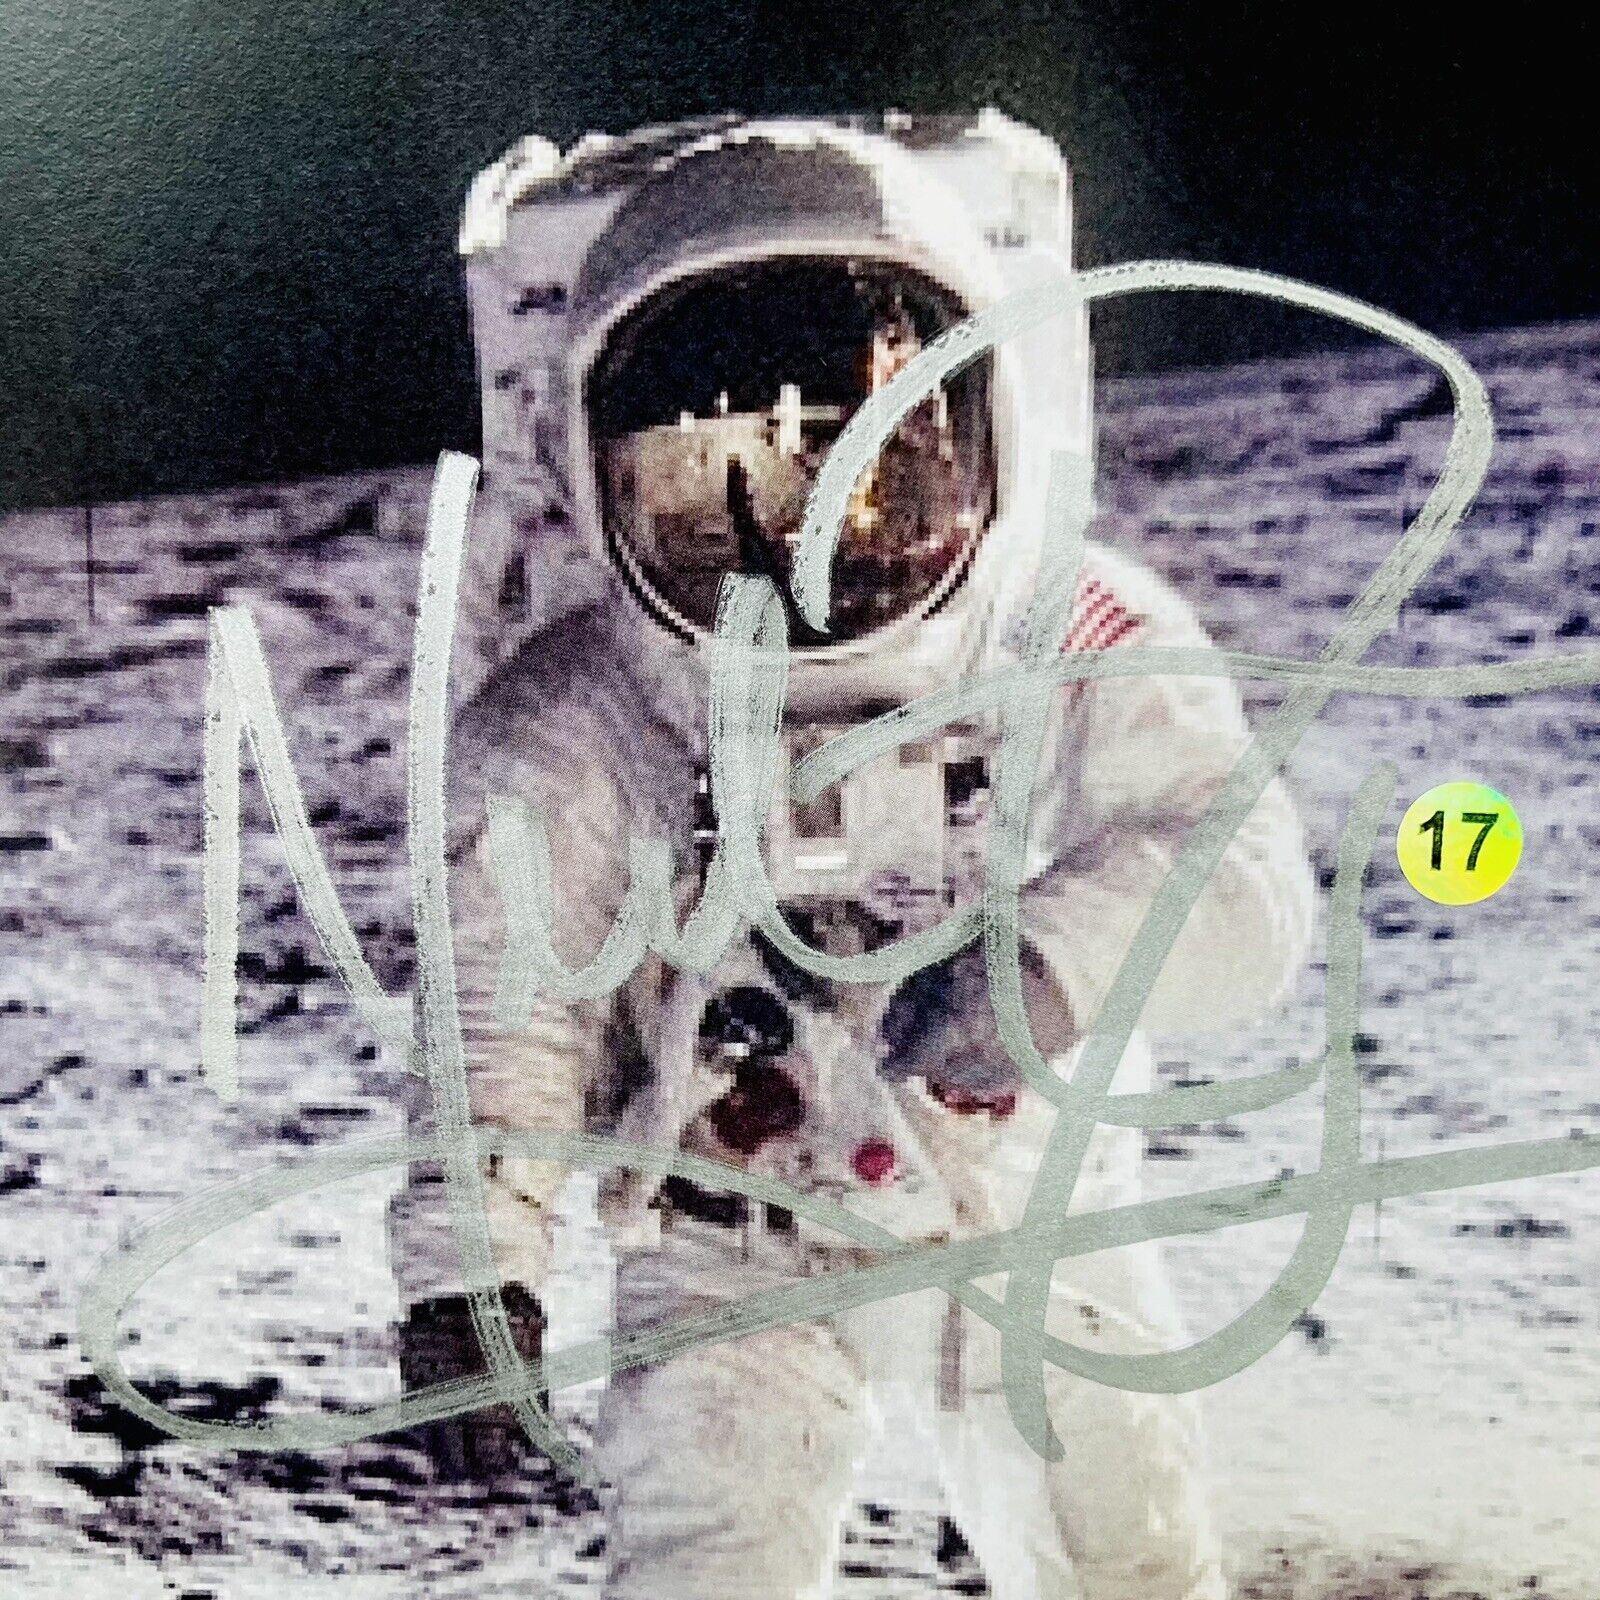 (Rare Read Description) NEIL ARMSTRONG NASA Apollo 11 Autographed Signed Photo